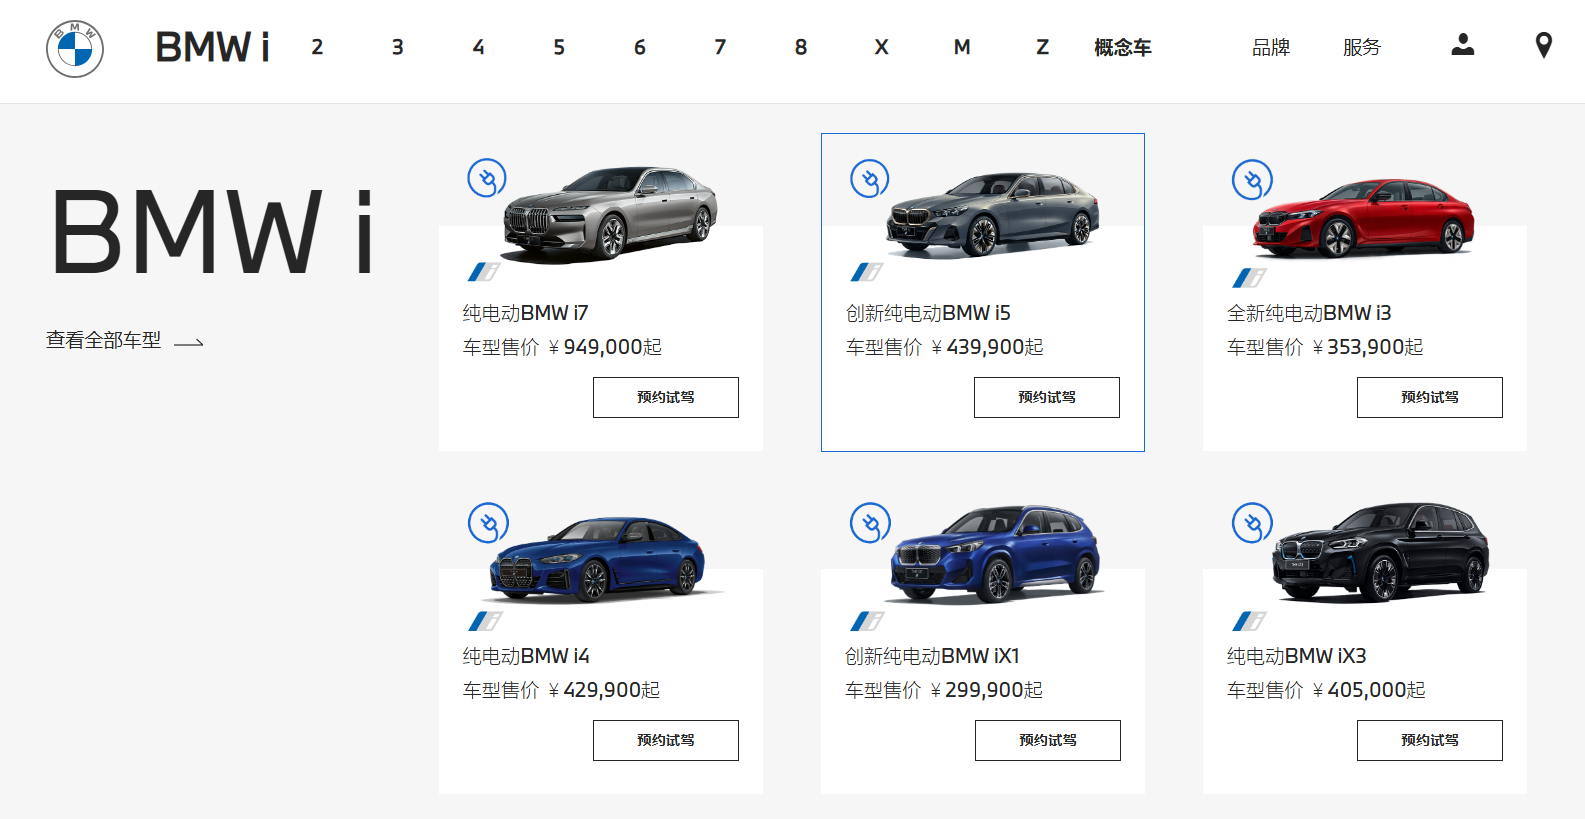 中國BMW加入電動車砍價割喉戰